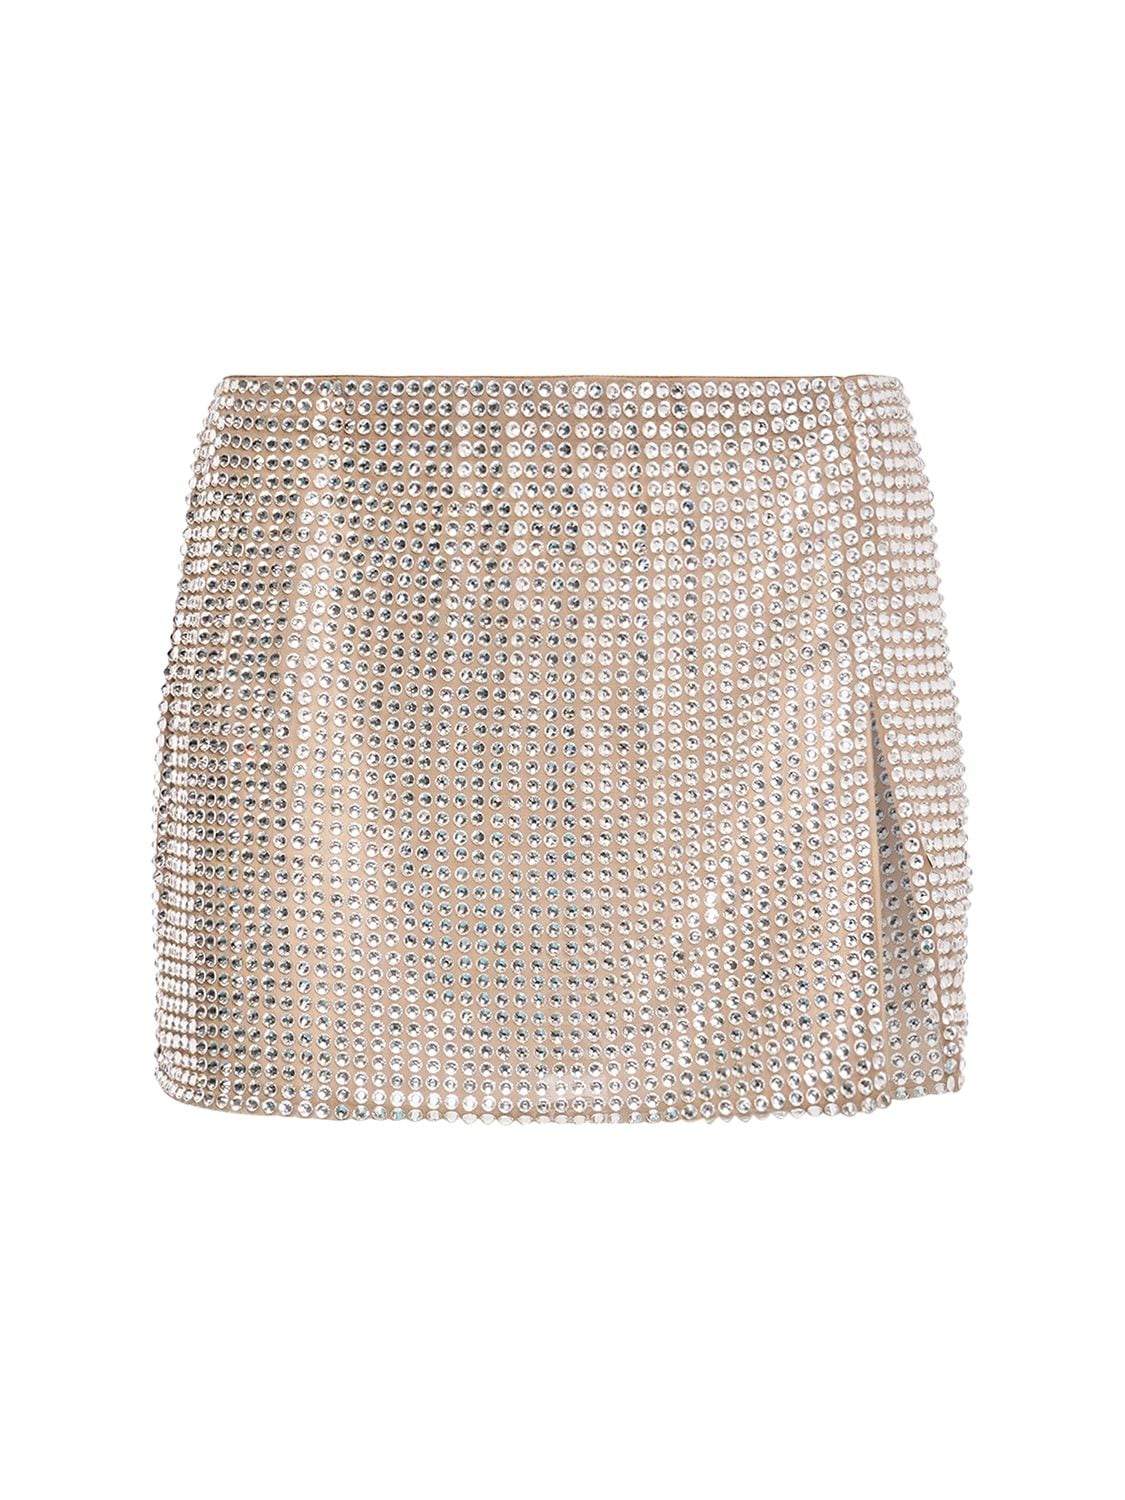 Image of Embellished Mini Skirt